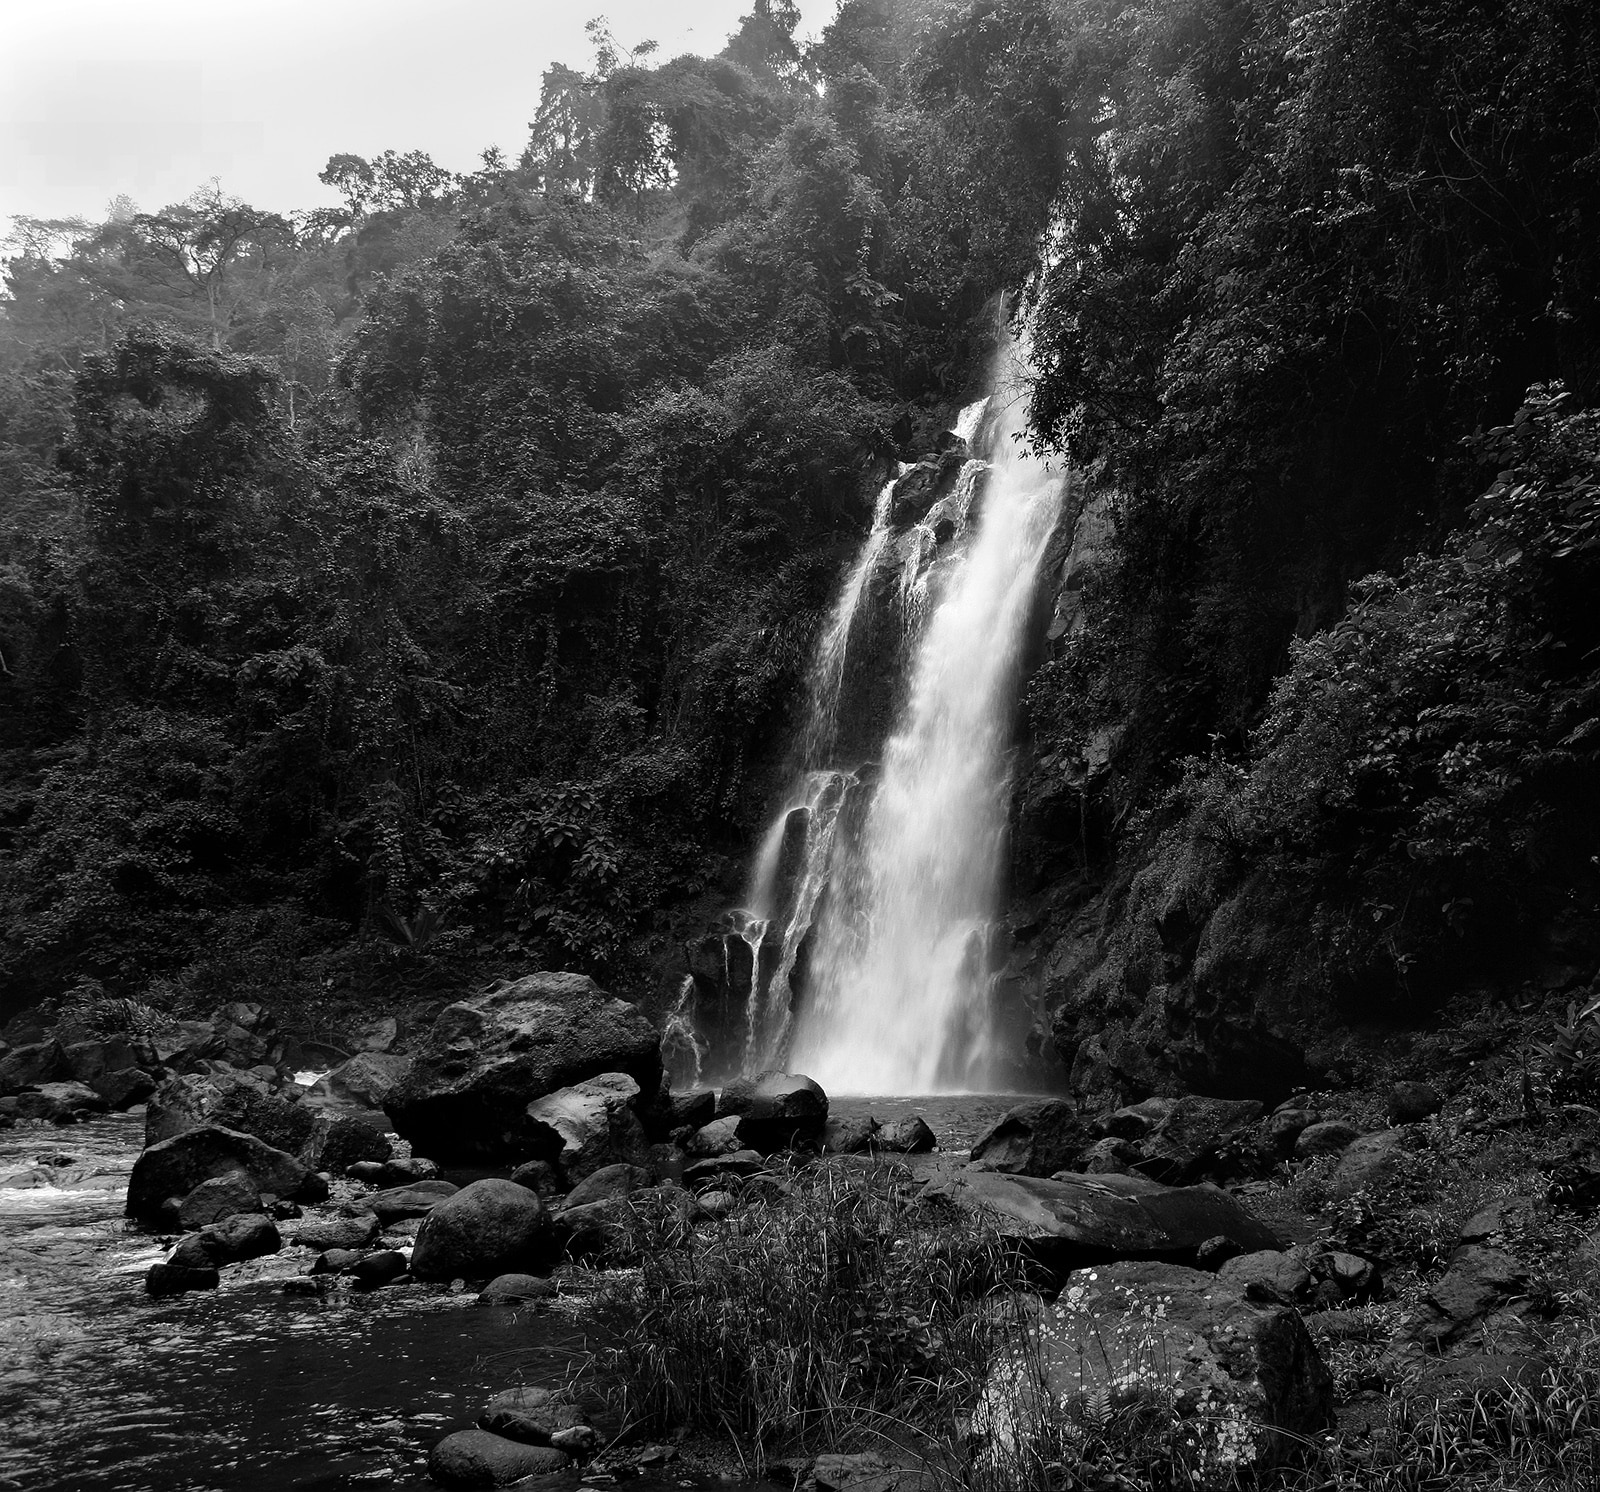 Marangu waterfalls